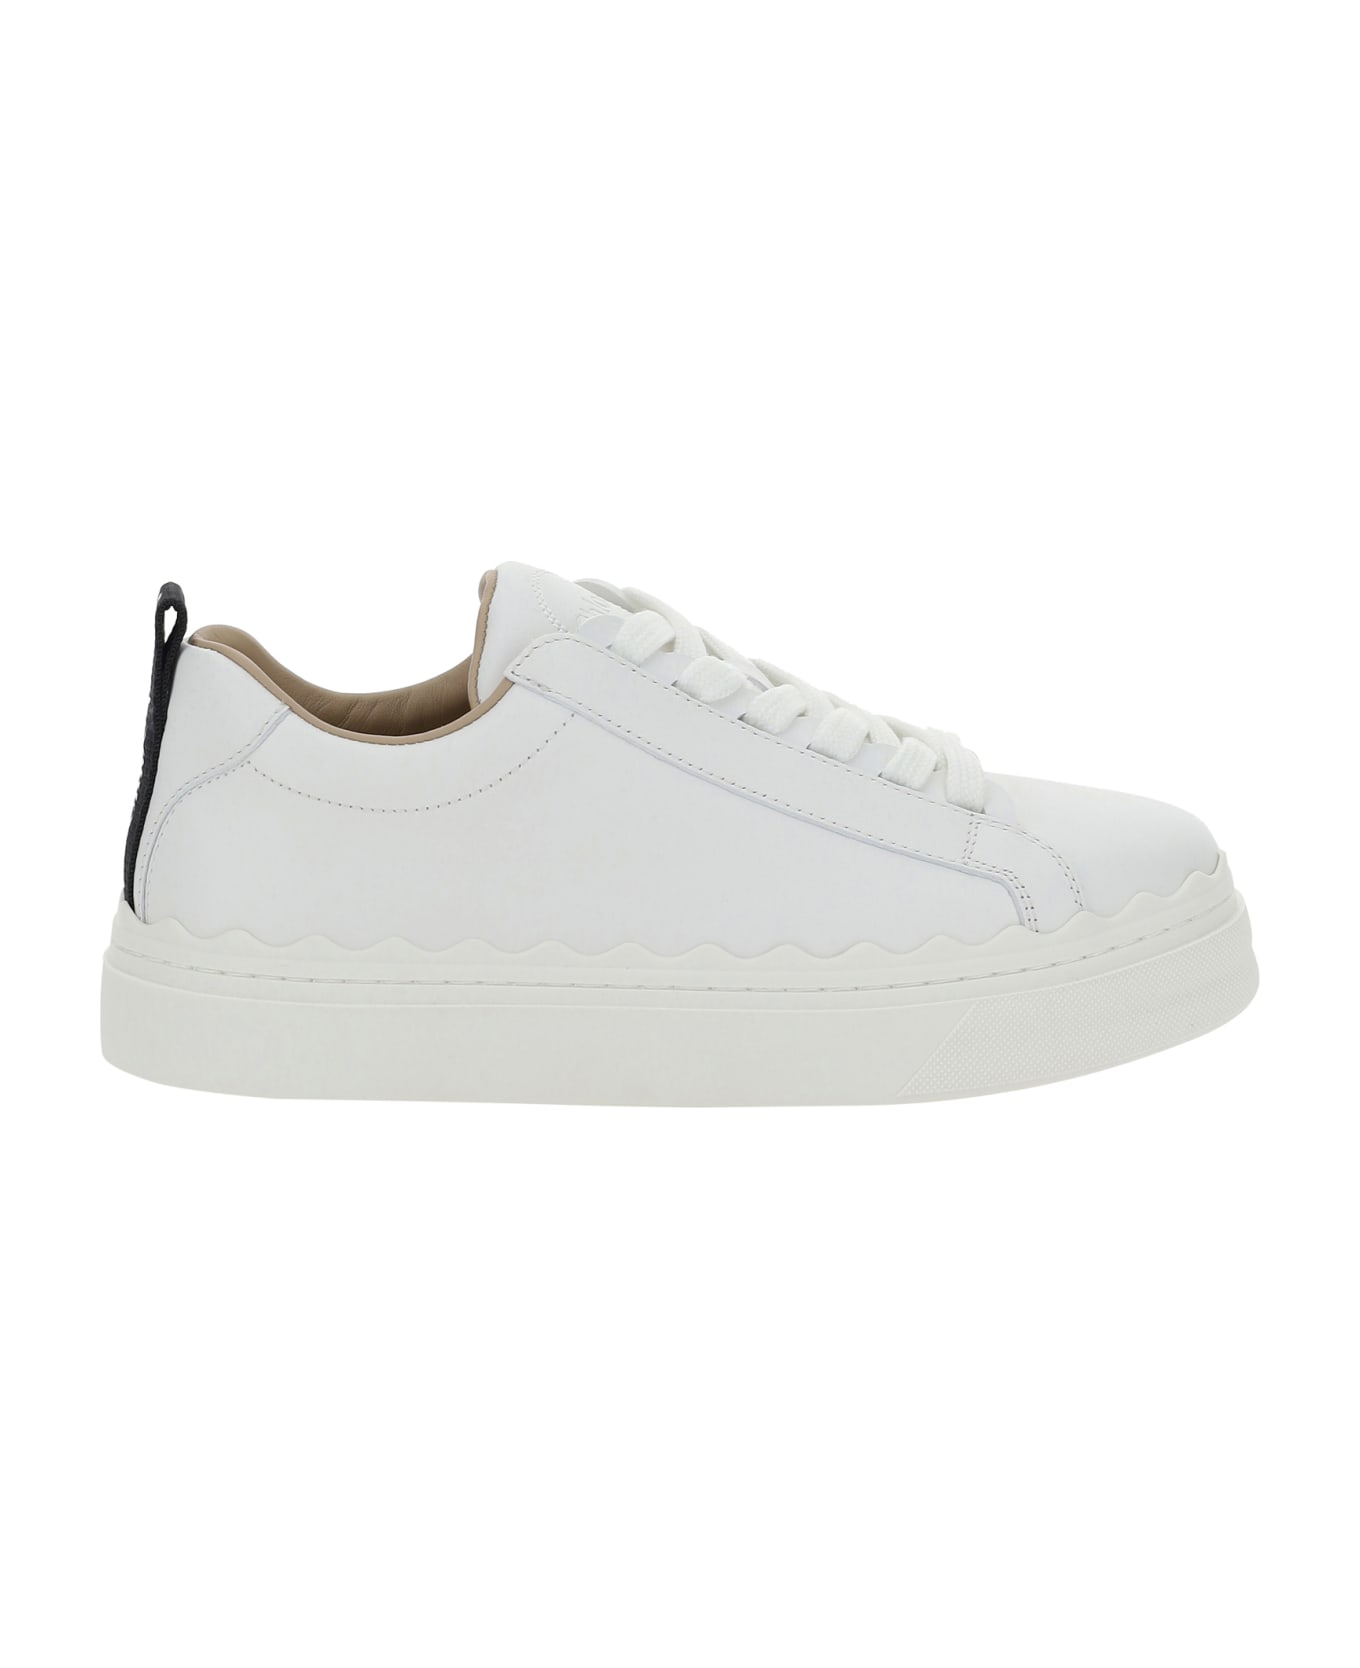 Chloé Sneakers - White スニーカー